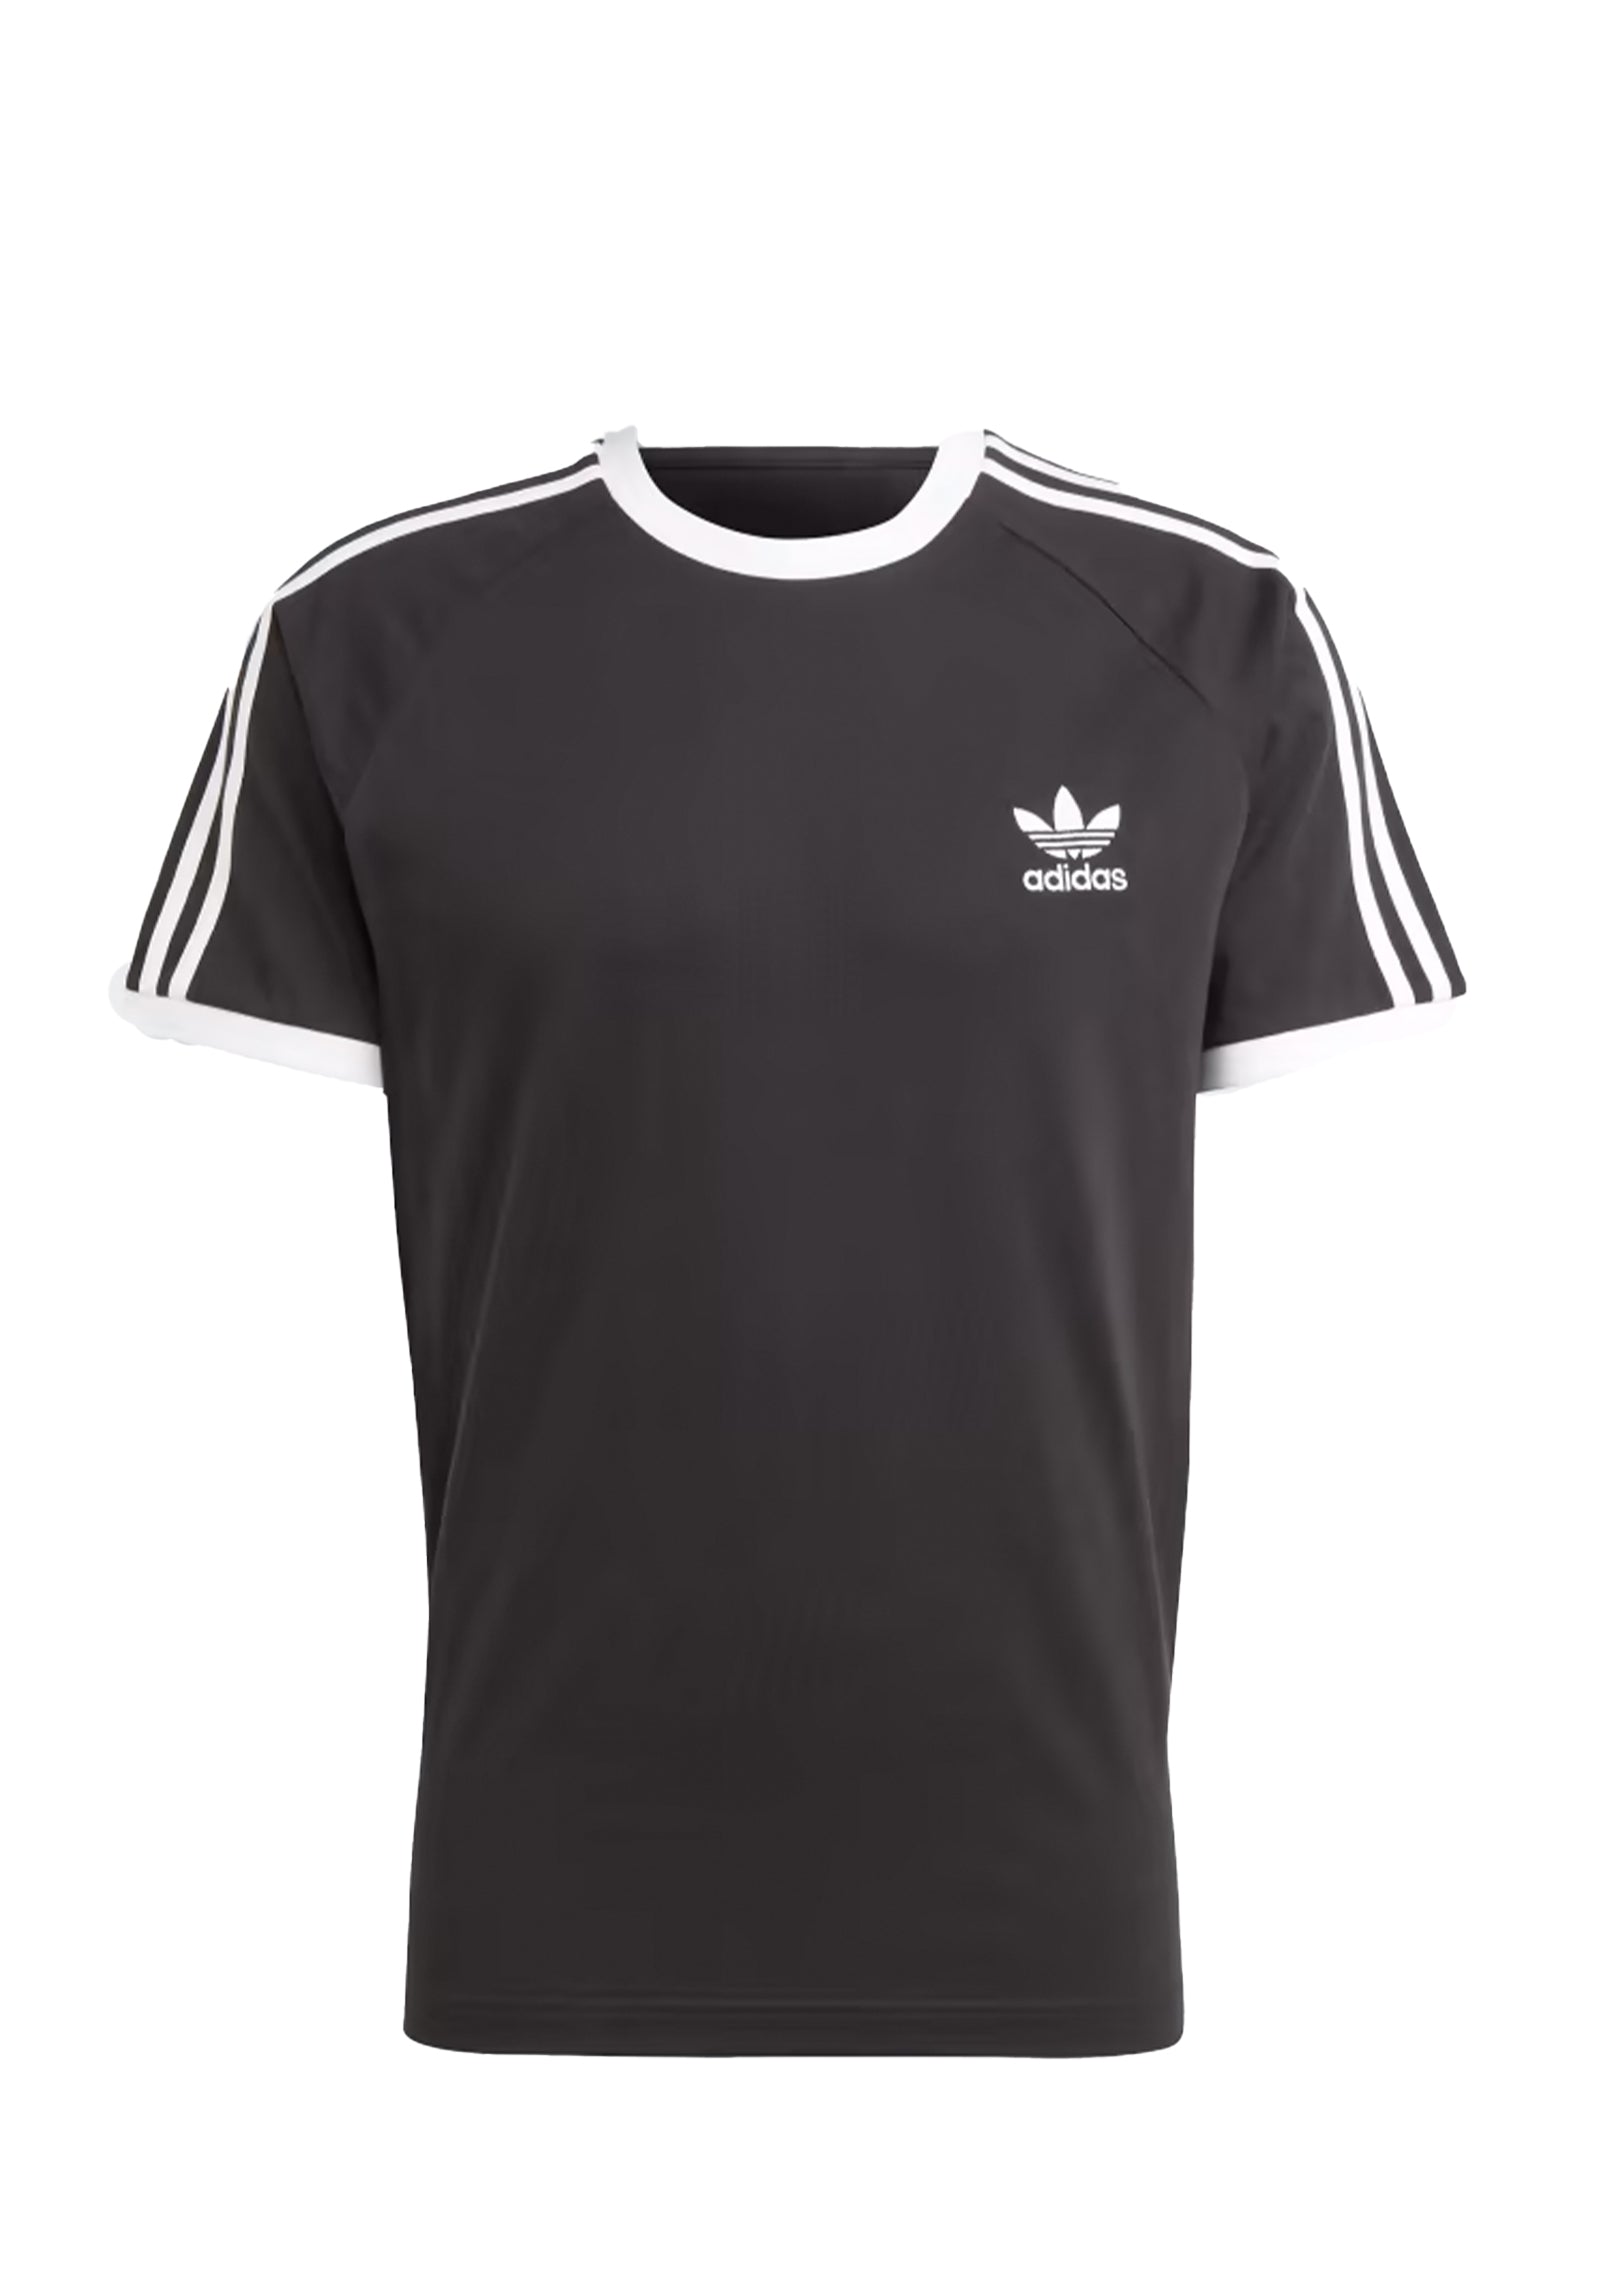 T-shirt Classics 3-stripes black/white